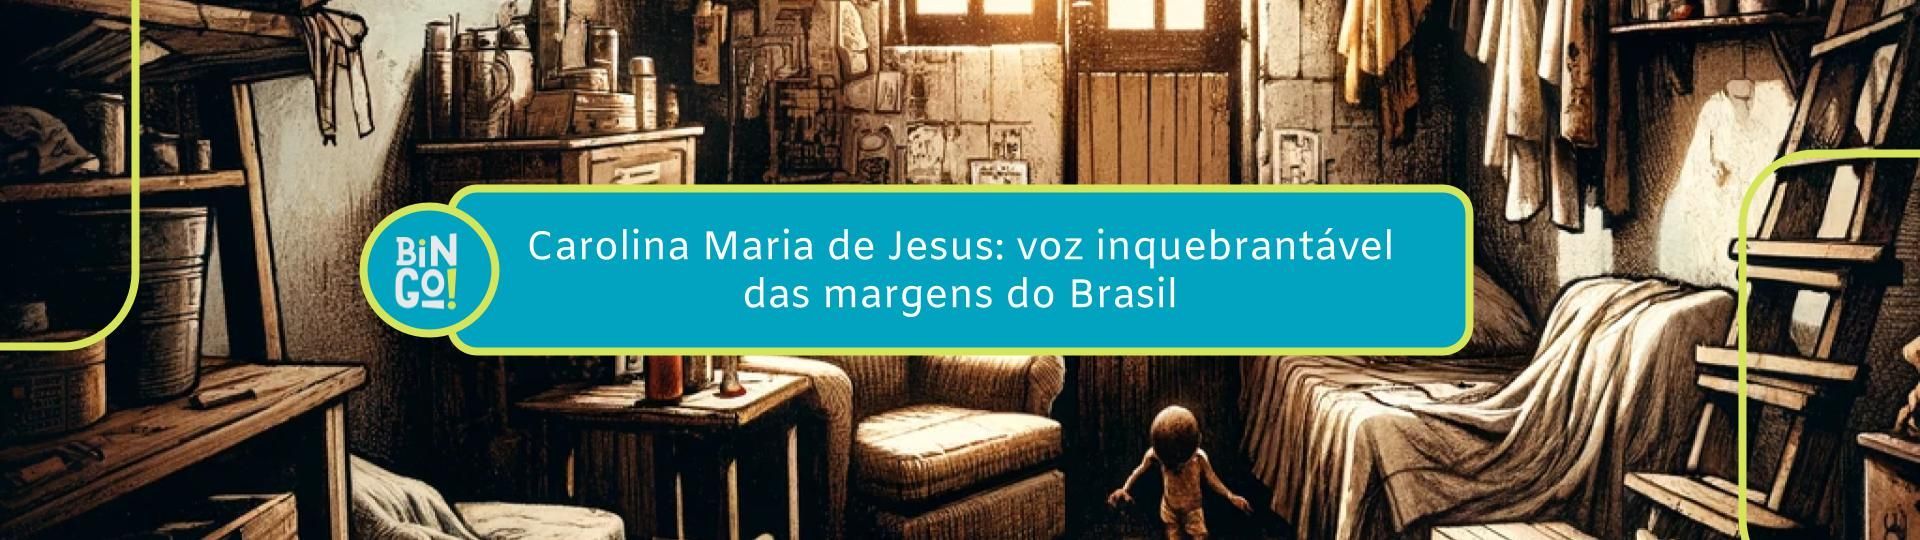 carolina-maria-de-jesus-voz-inquebrantavel-das-margens-do-brasil